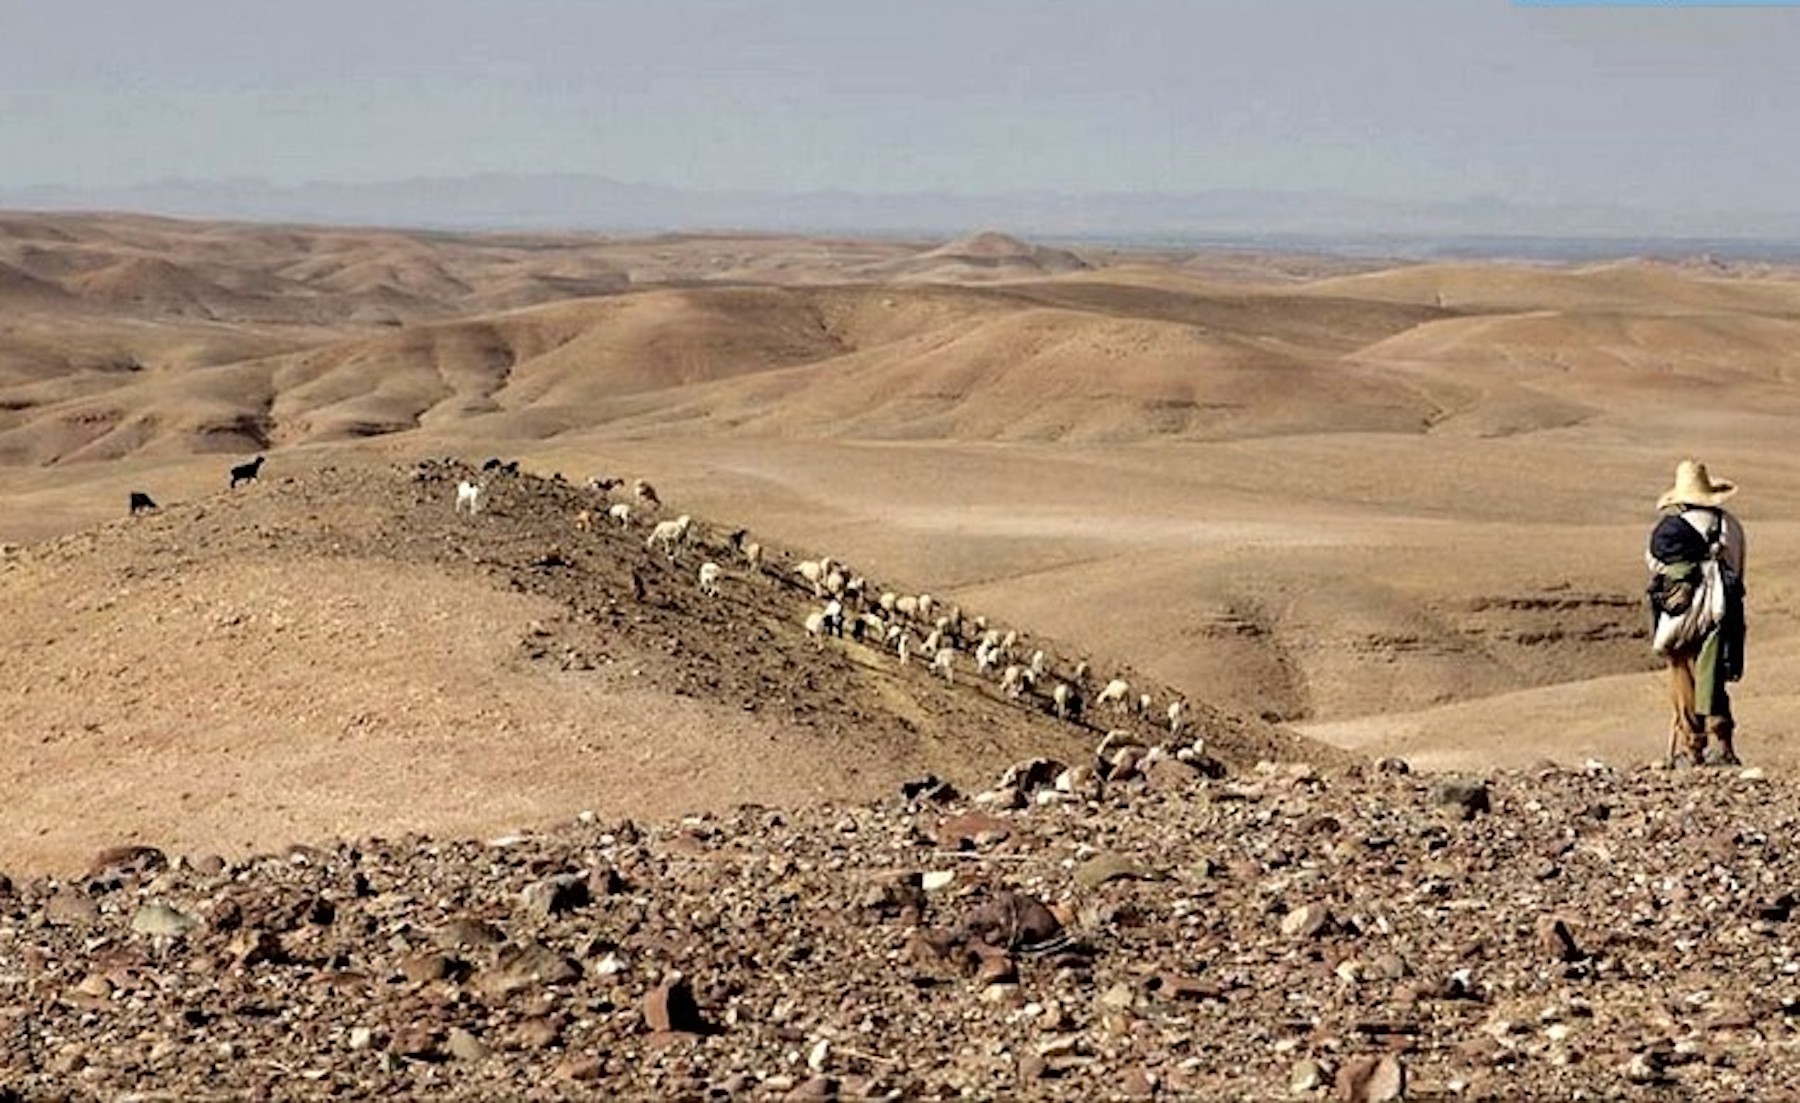 Tour de 2 días al desierto de agafay, a solo 45 km de marrakech 236